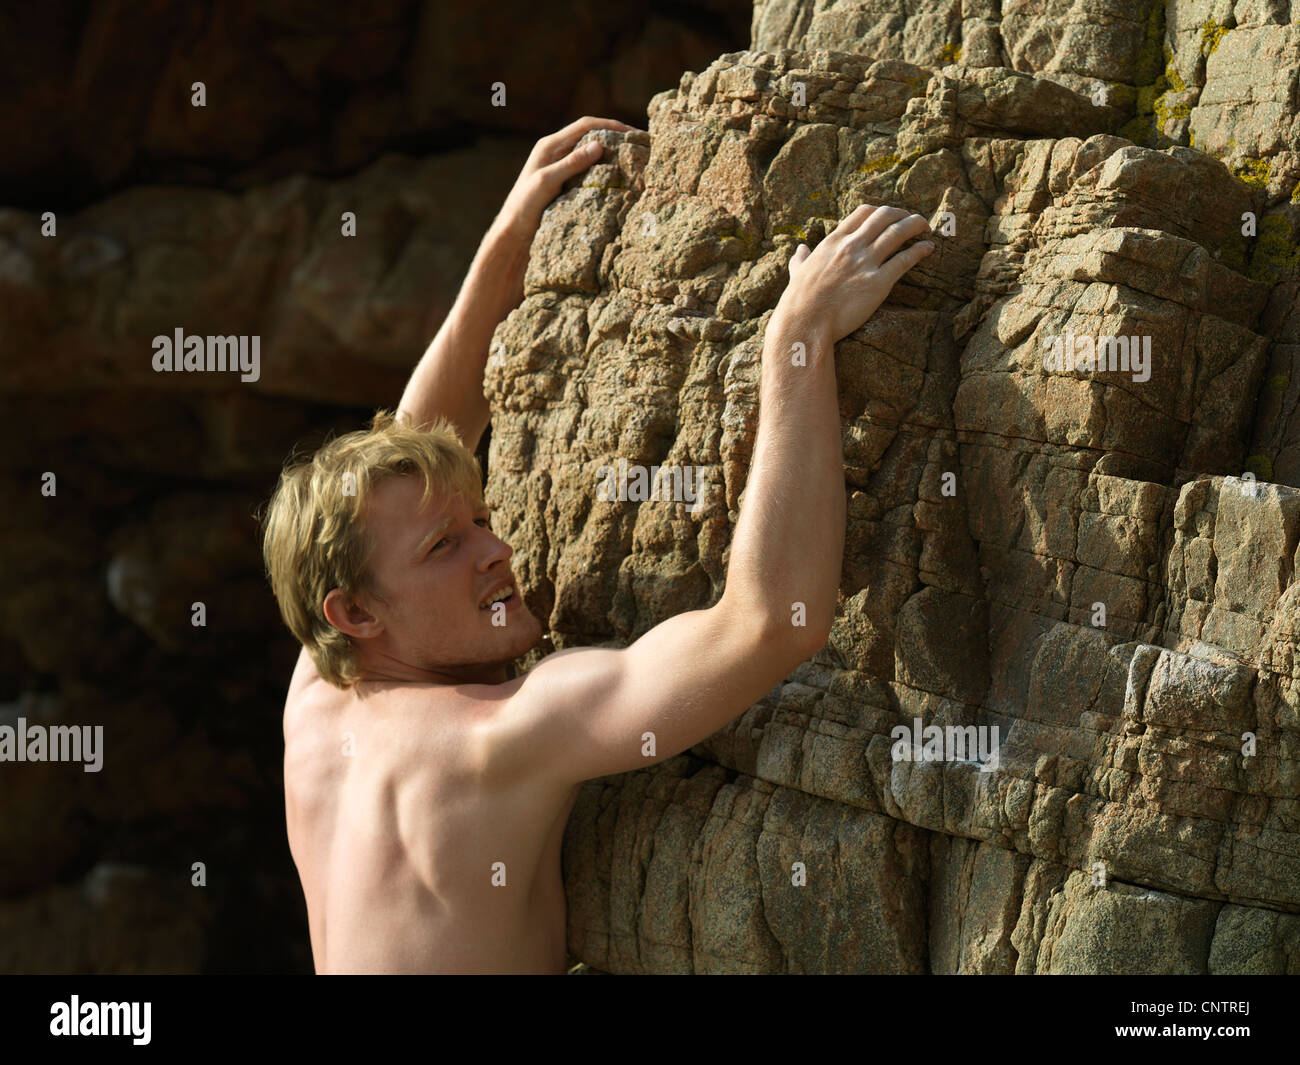 Rock climber scaling steep rock face Stock Photo